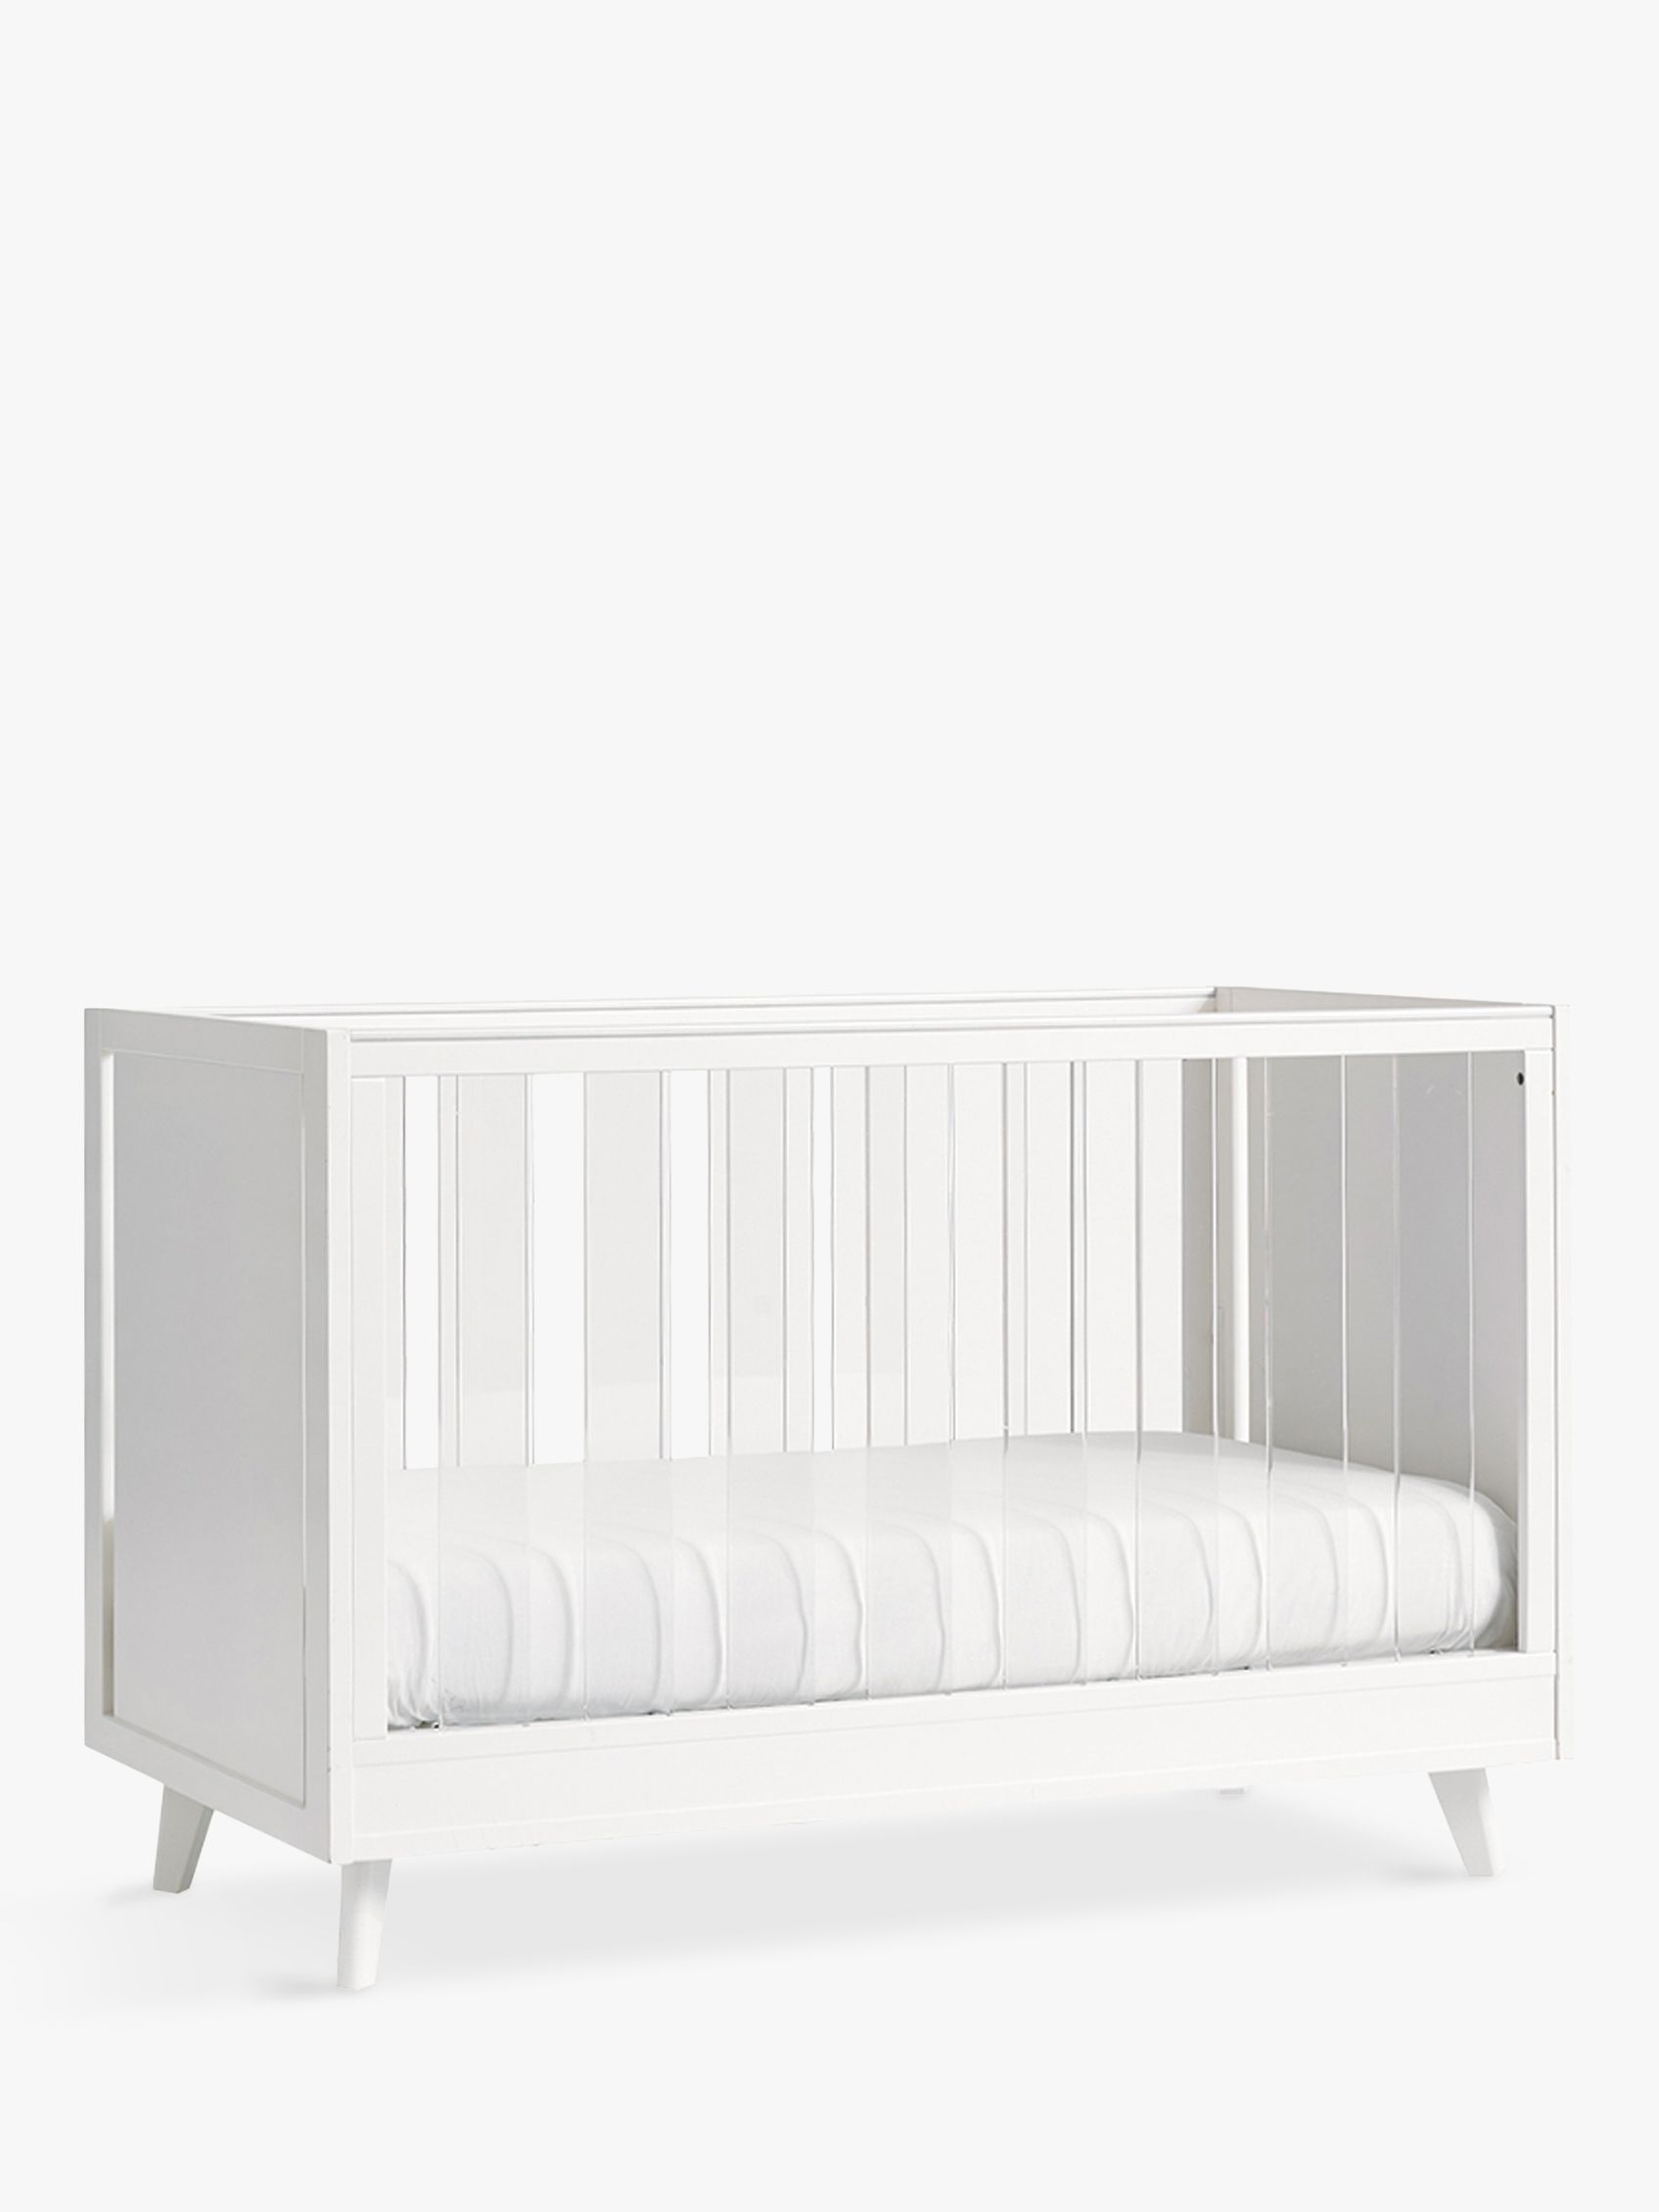 acrylic baby cot